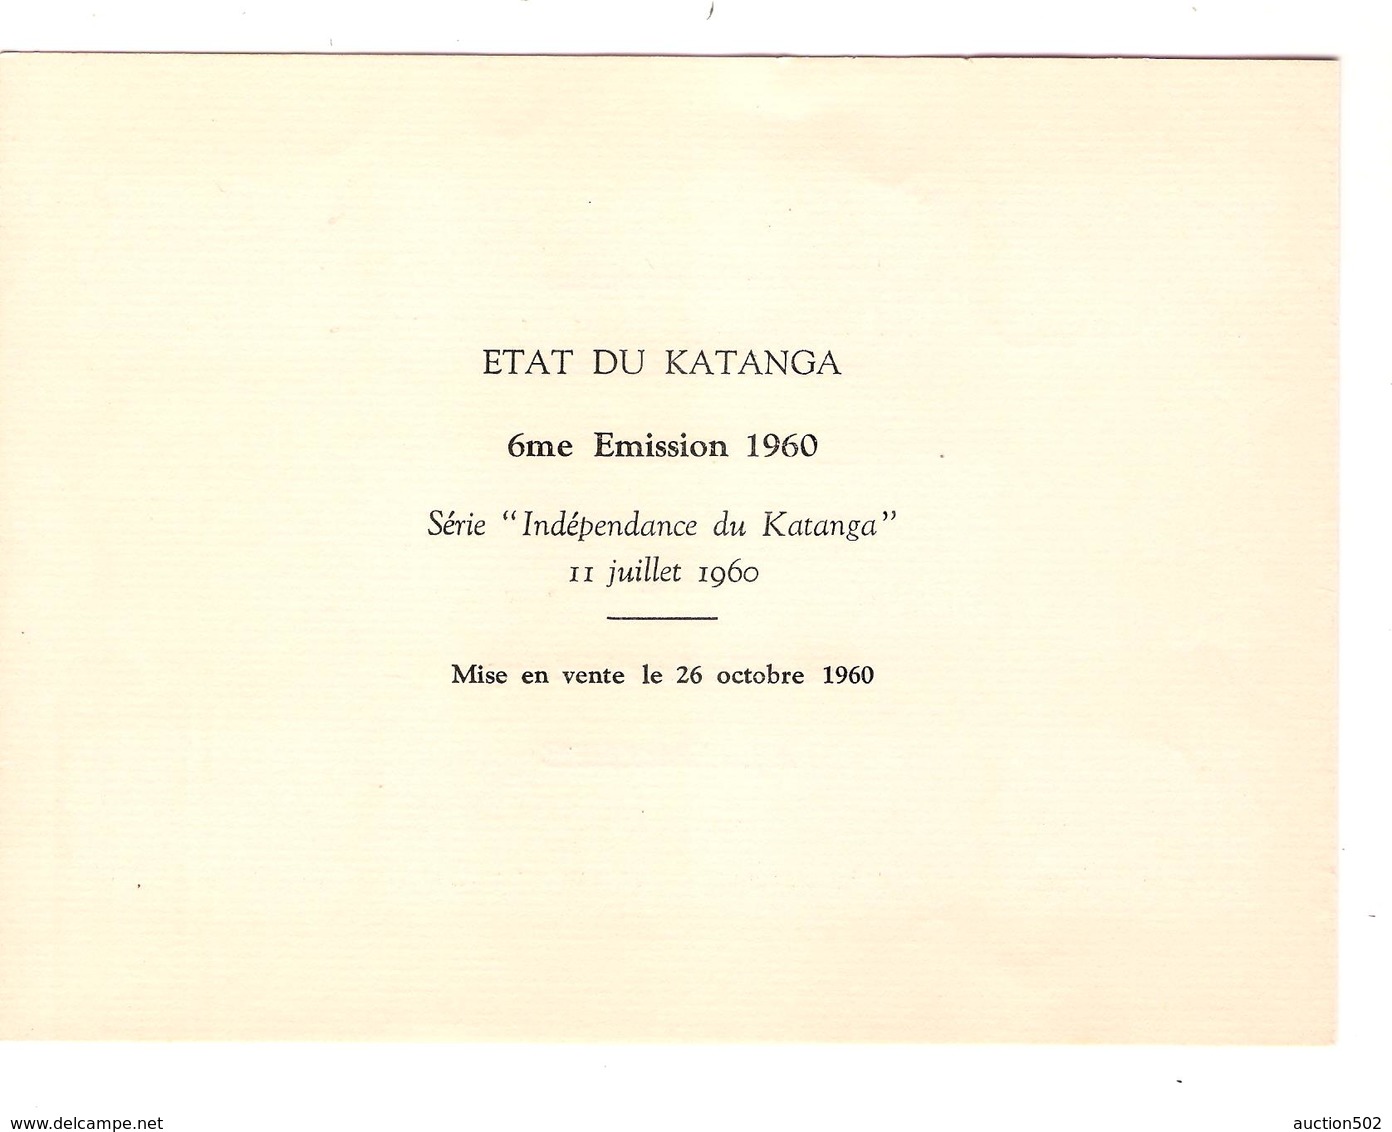 PR6522/ Katanga TP 6/49 Emission 1960 Ministère Communications A.Kiela&Directeur des Postes du Katanga A.J.H.Packbiers